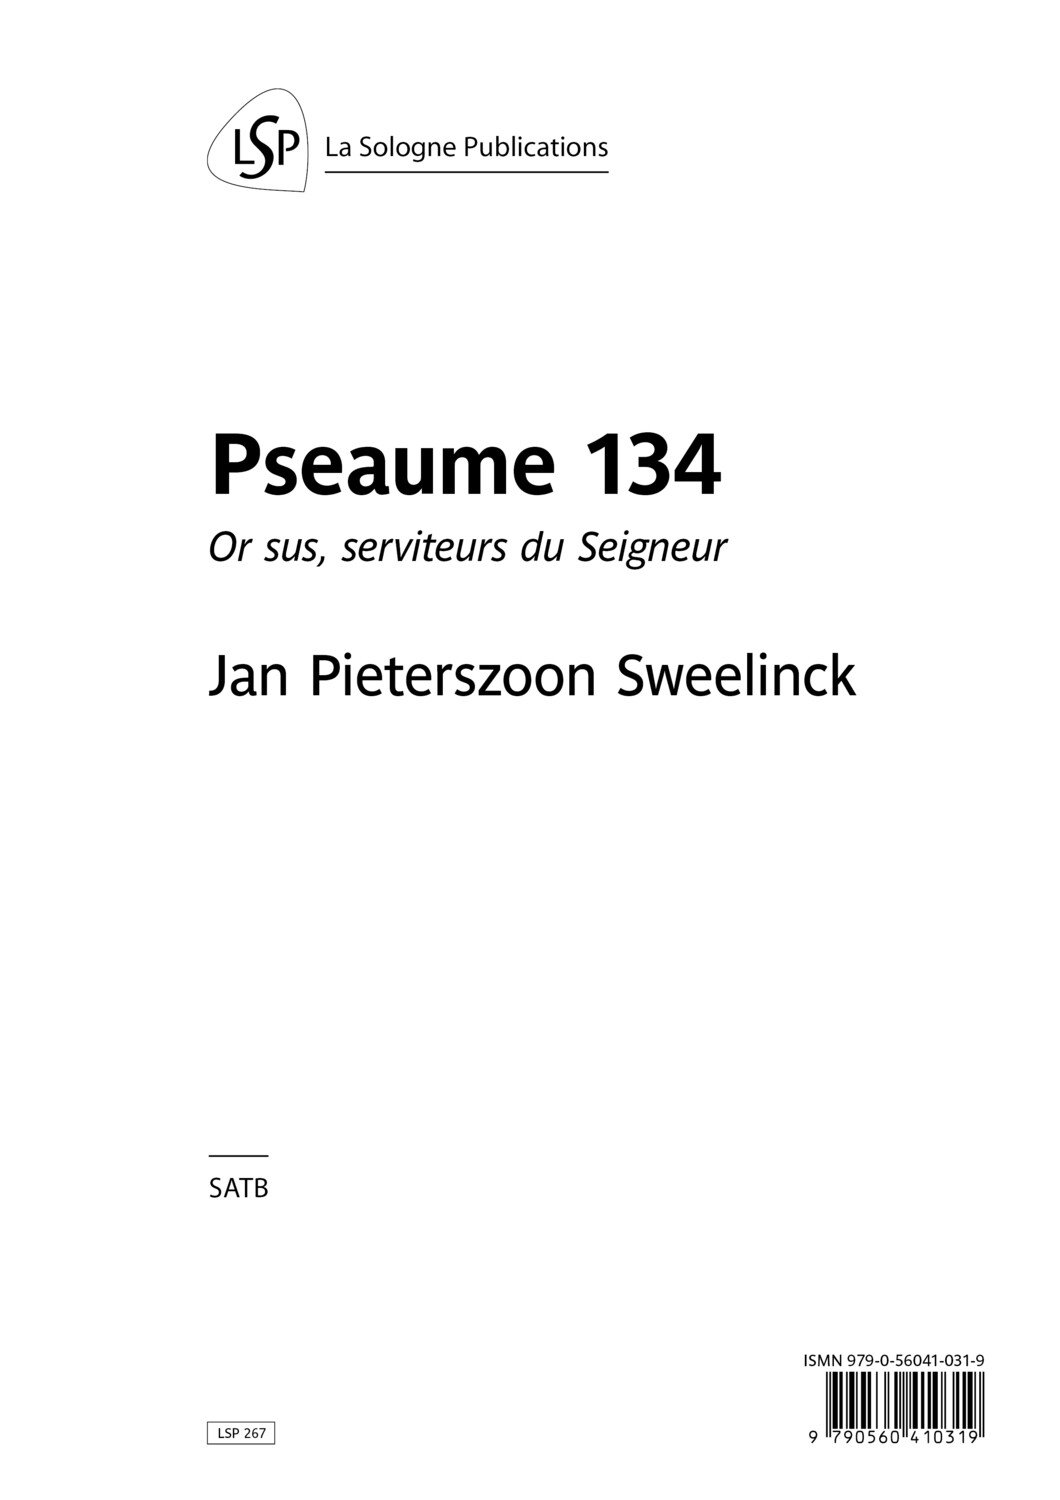 SWEELINCK Pseaume 134 / Or sus, serviteurs du Seigneur / SATB